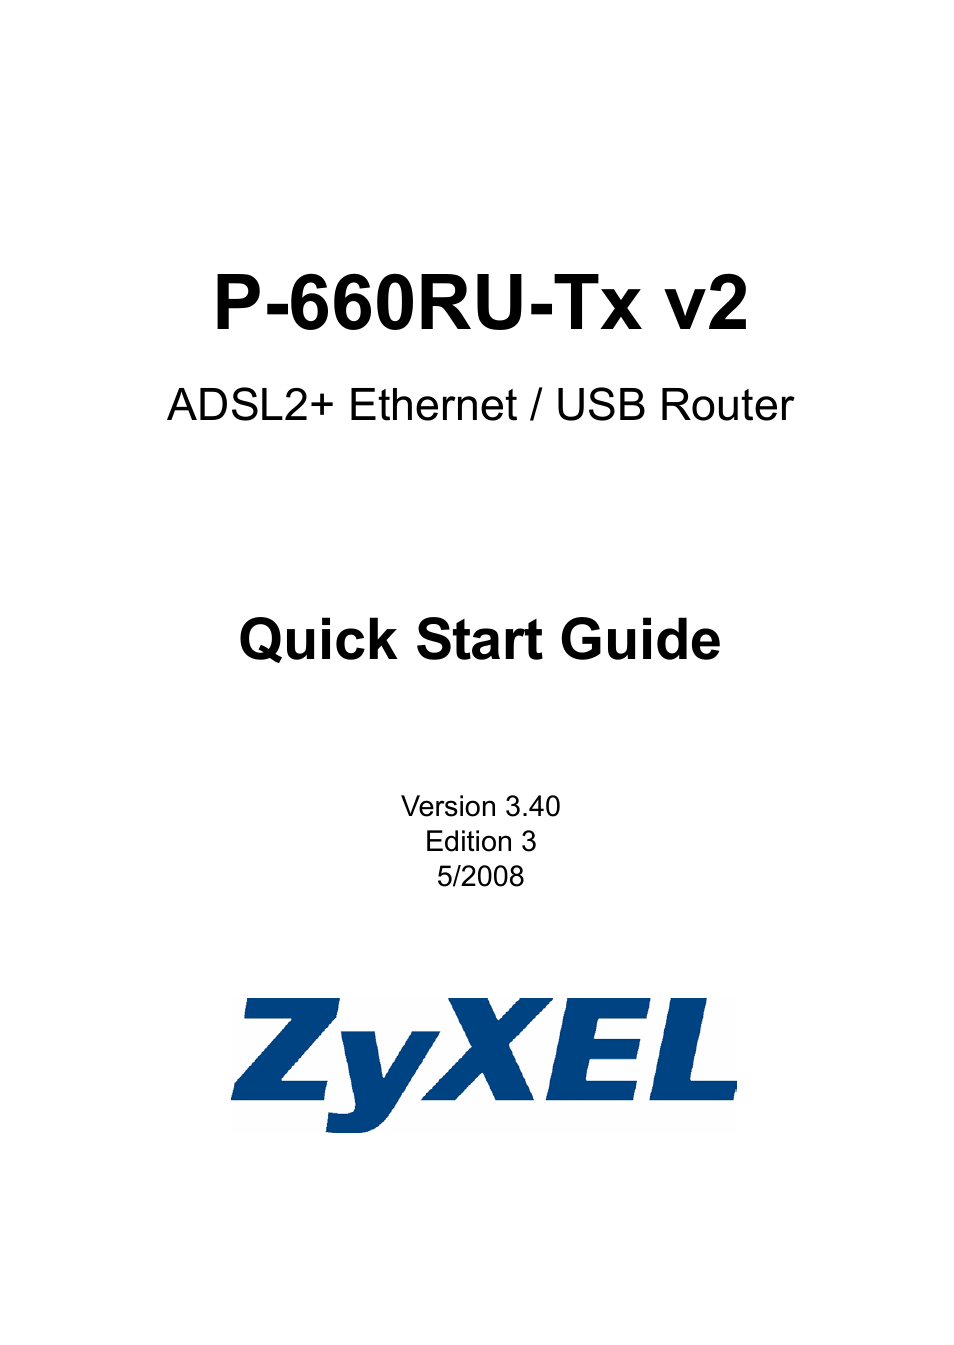 ADSL2+ Ethernet / USB Router P-660RU-Tx v2